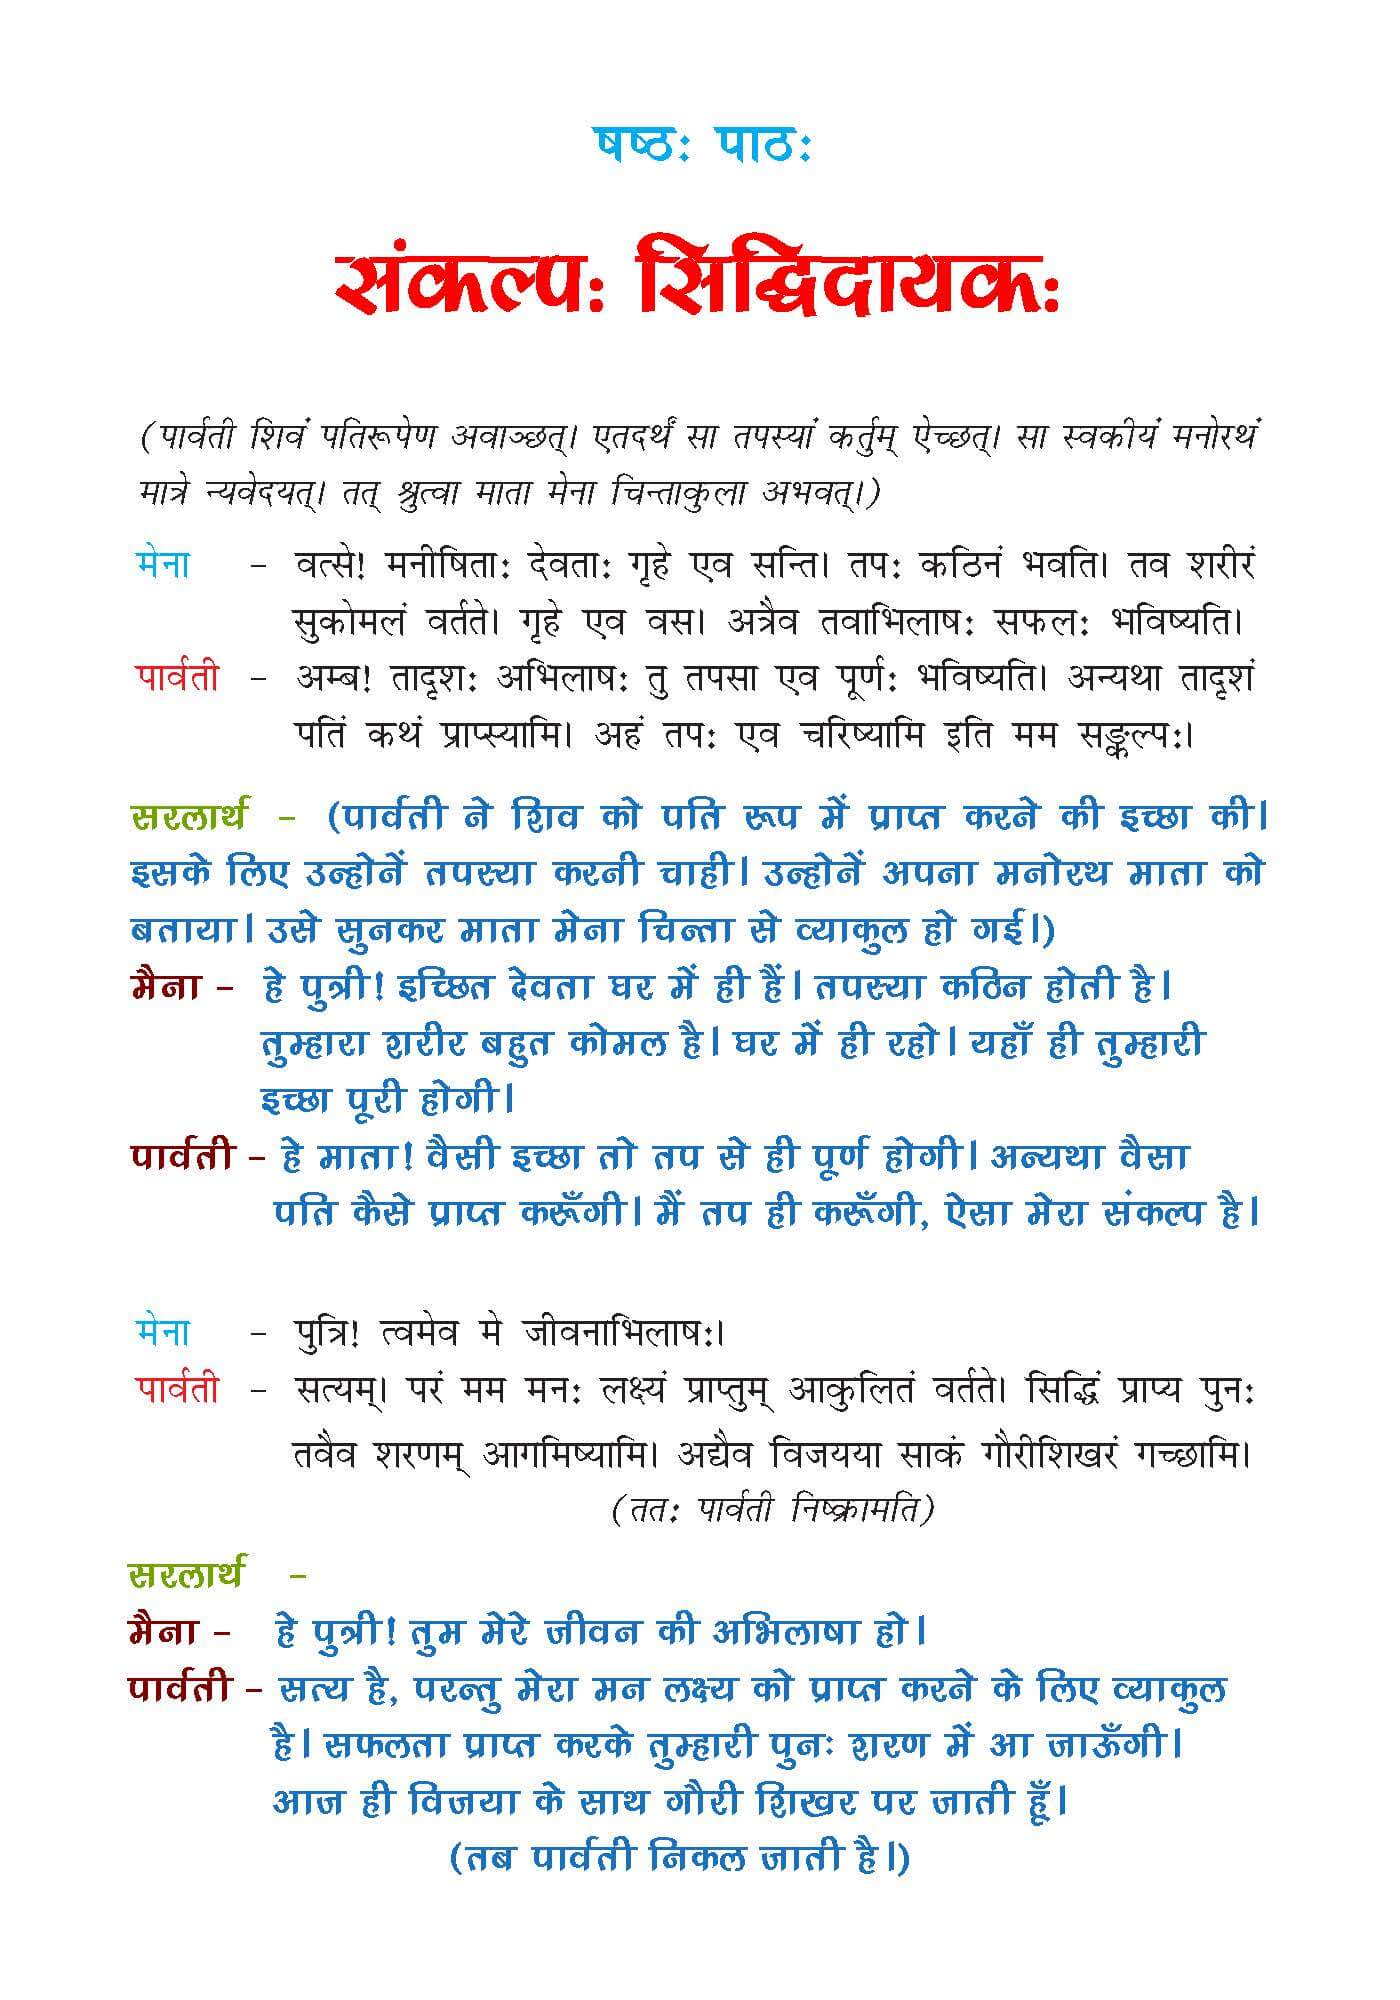 NCERT Solution For Class 7 Sanskrit Chapter 6 part 1